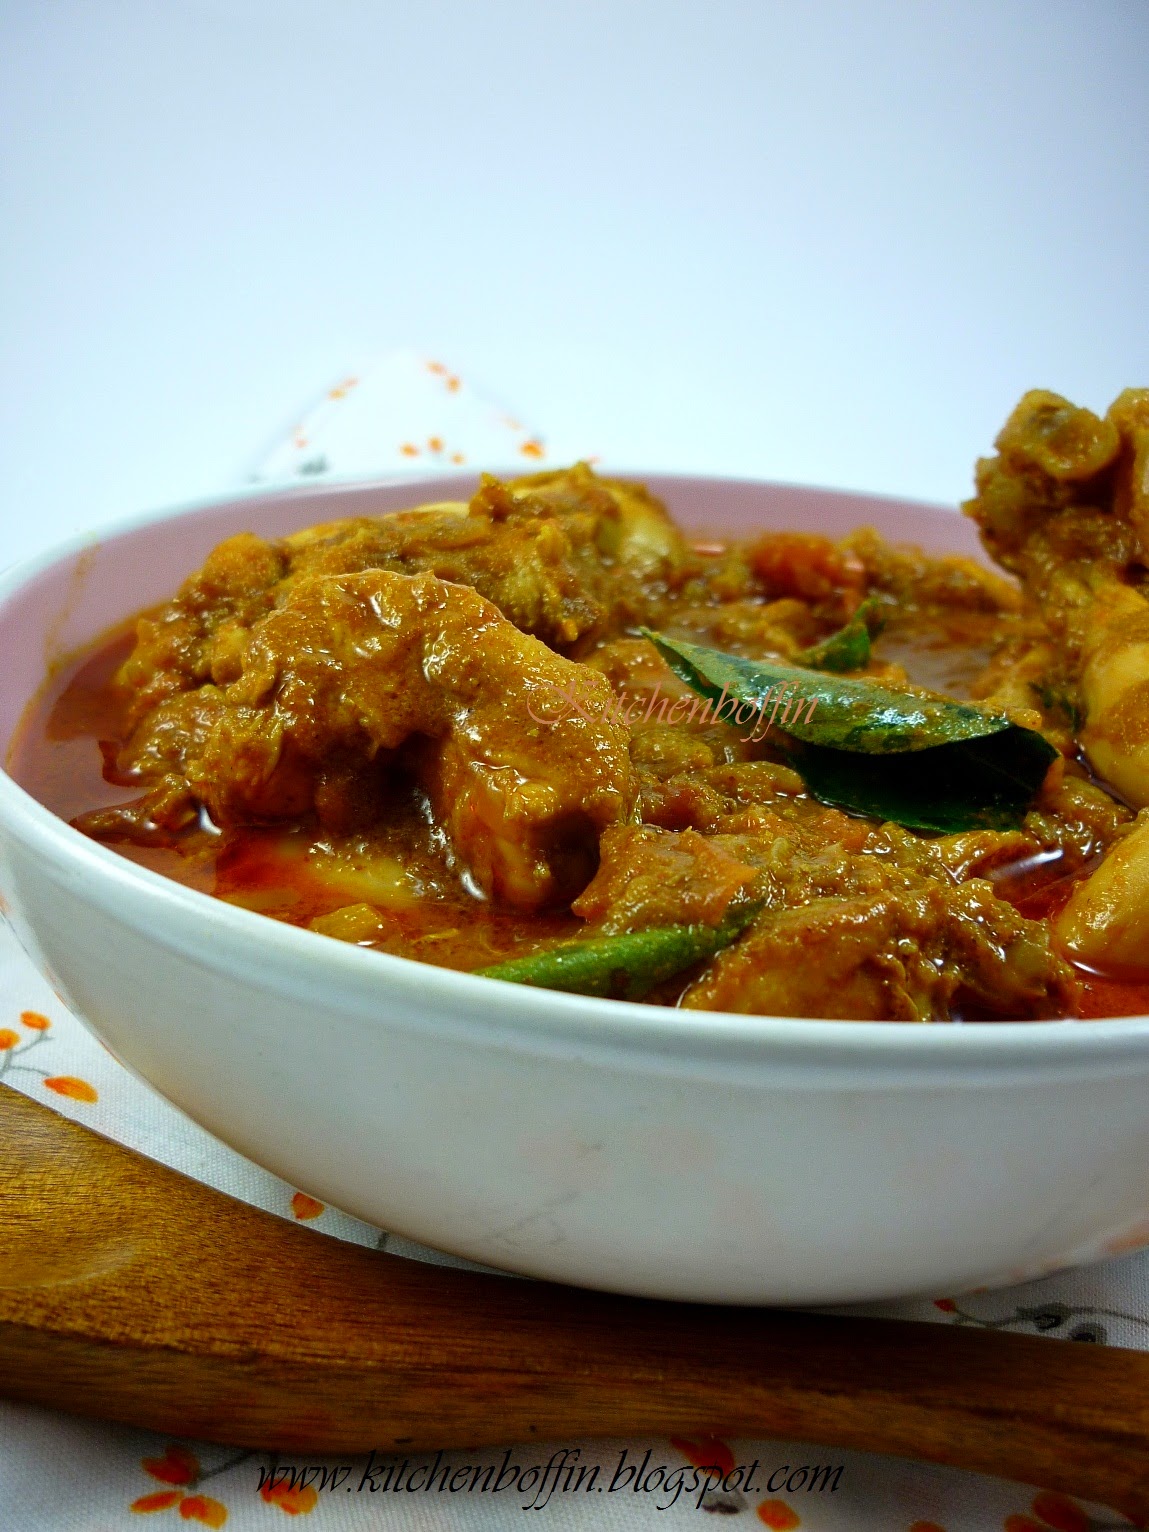 Kitchen Boffin: Malabar Chicken Curry